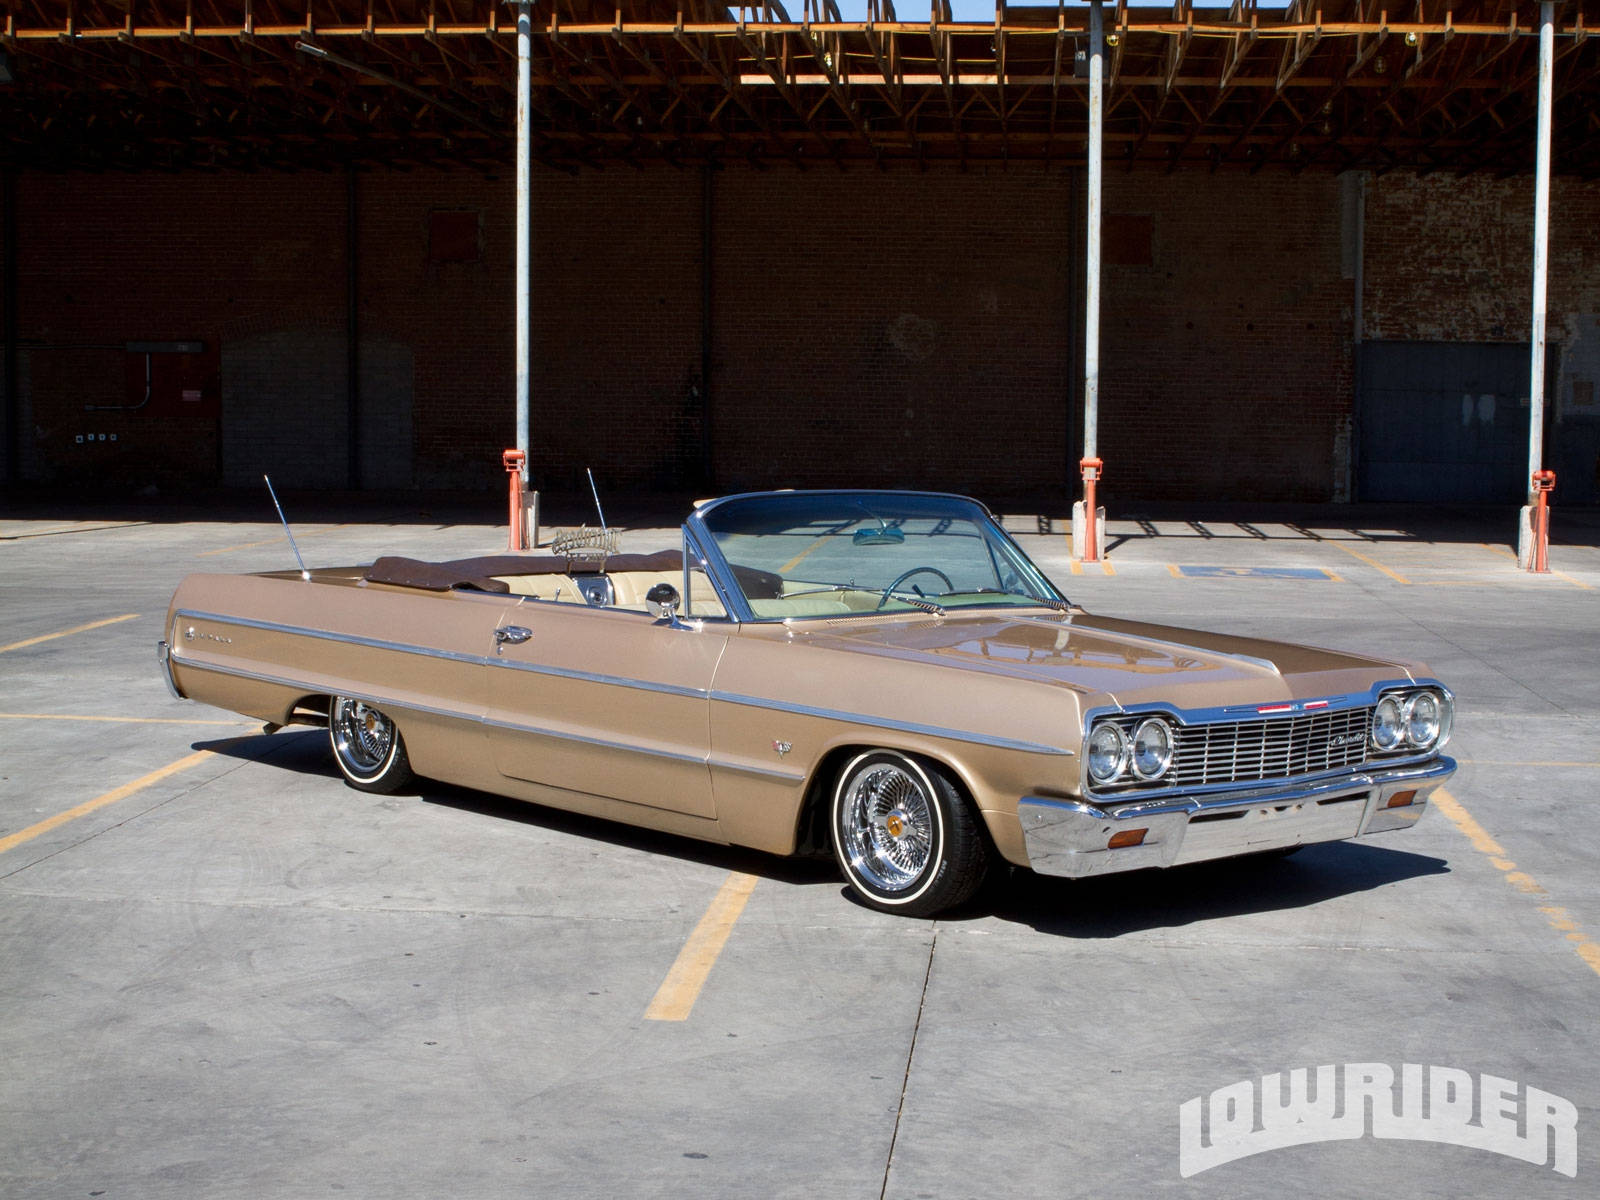 Lowrider Cream-colored 1964 Impala Wallpaper